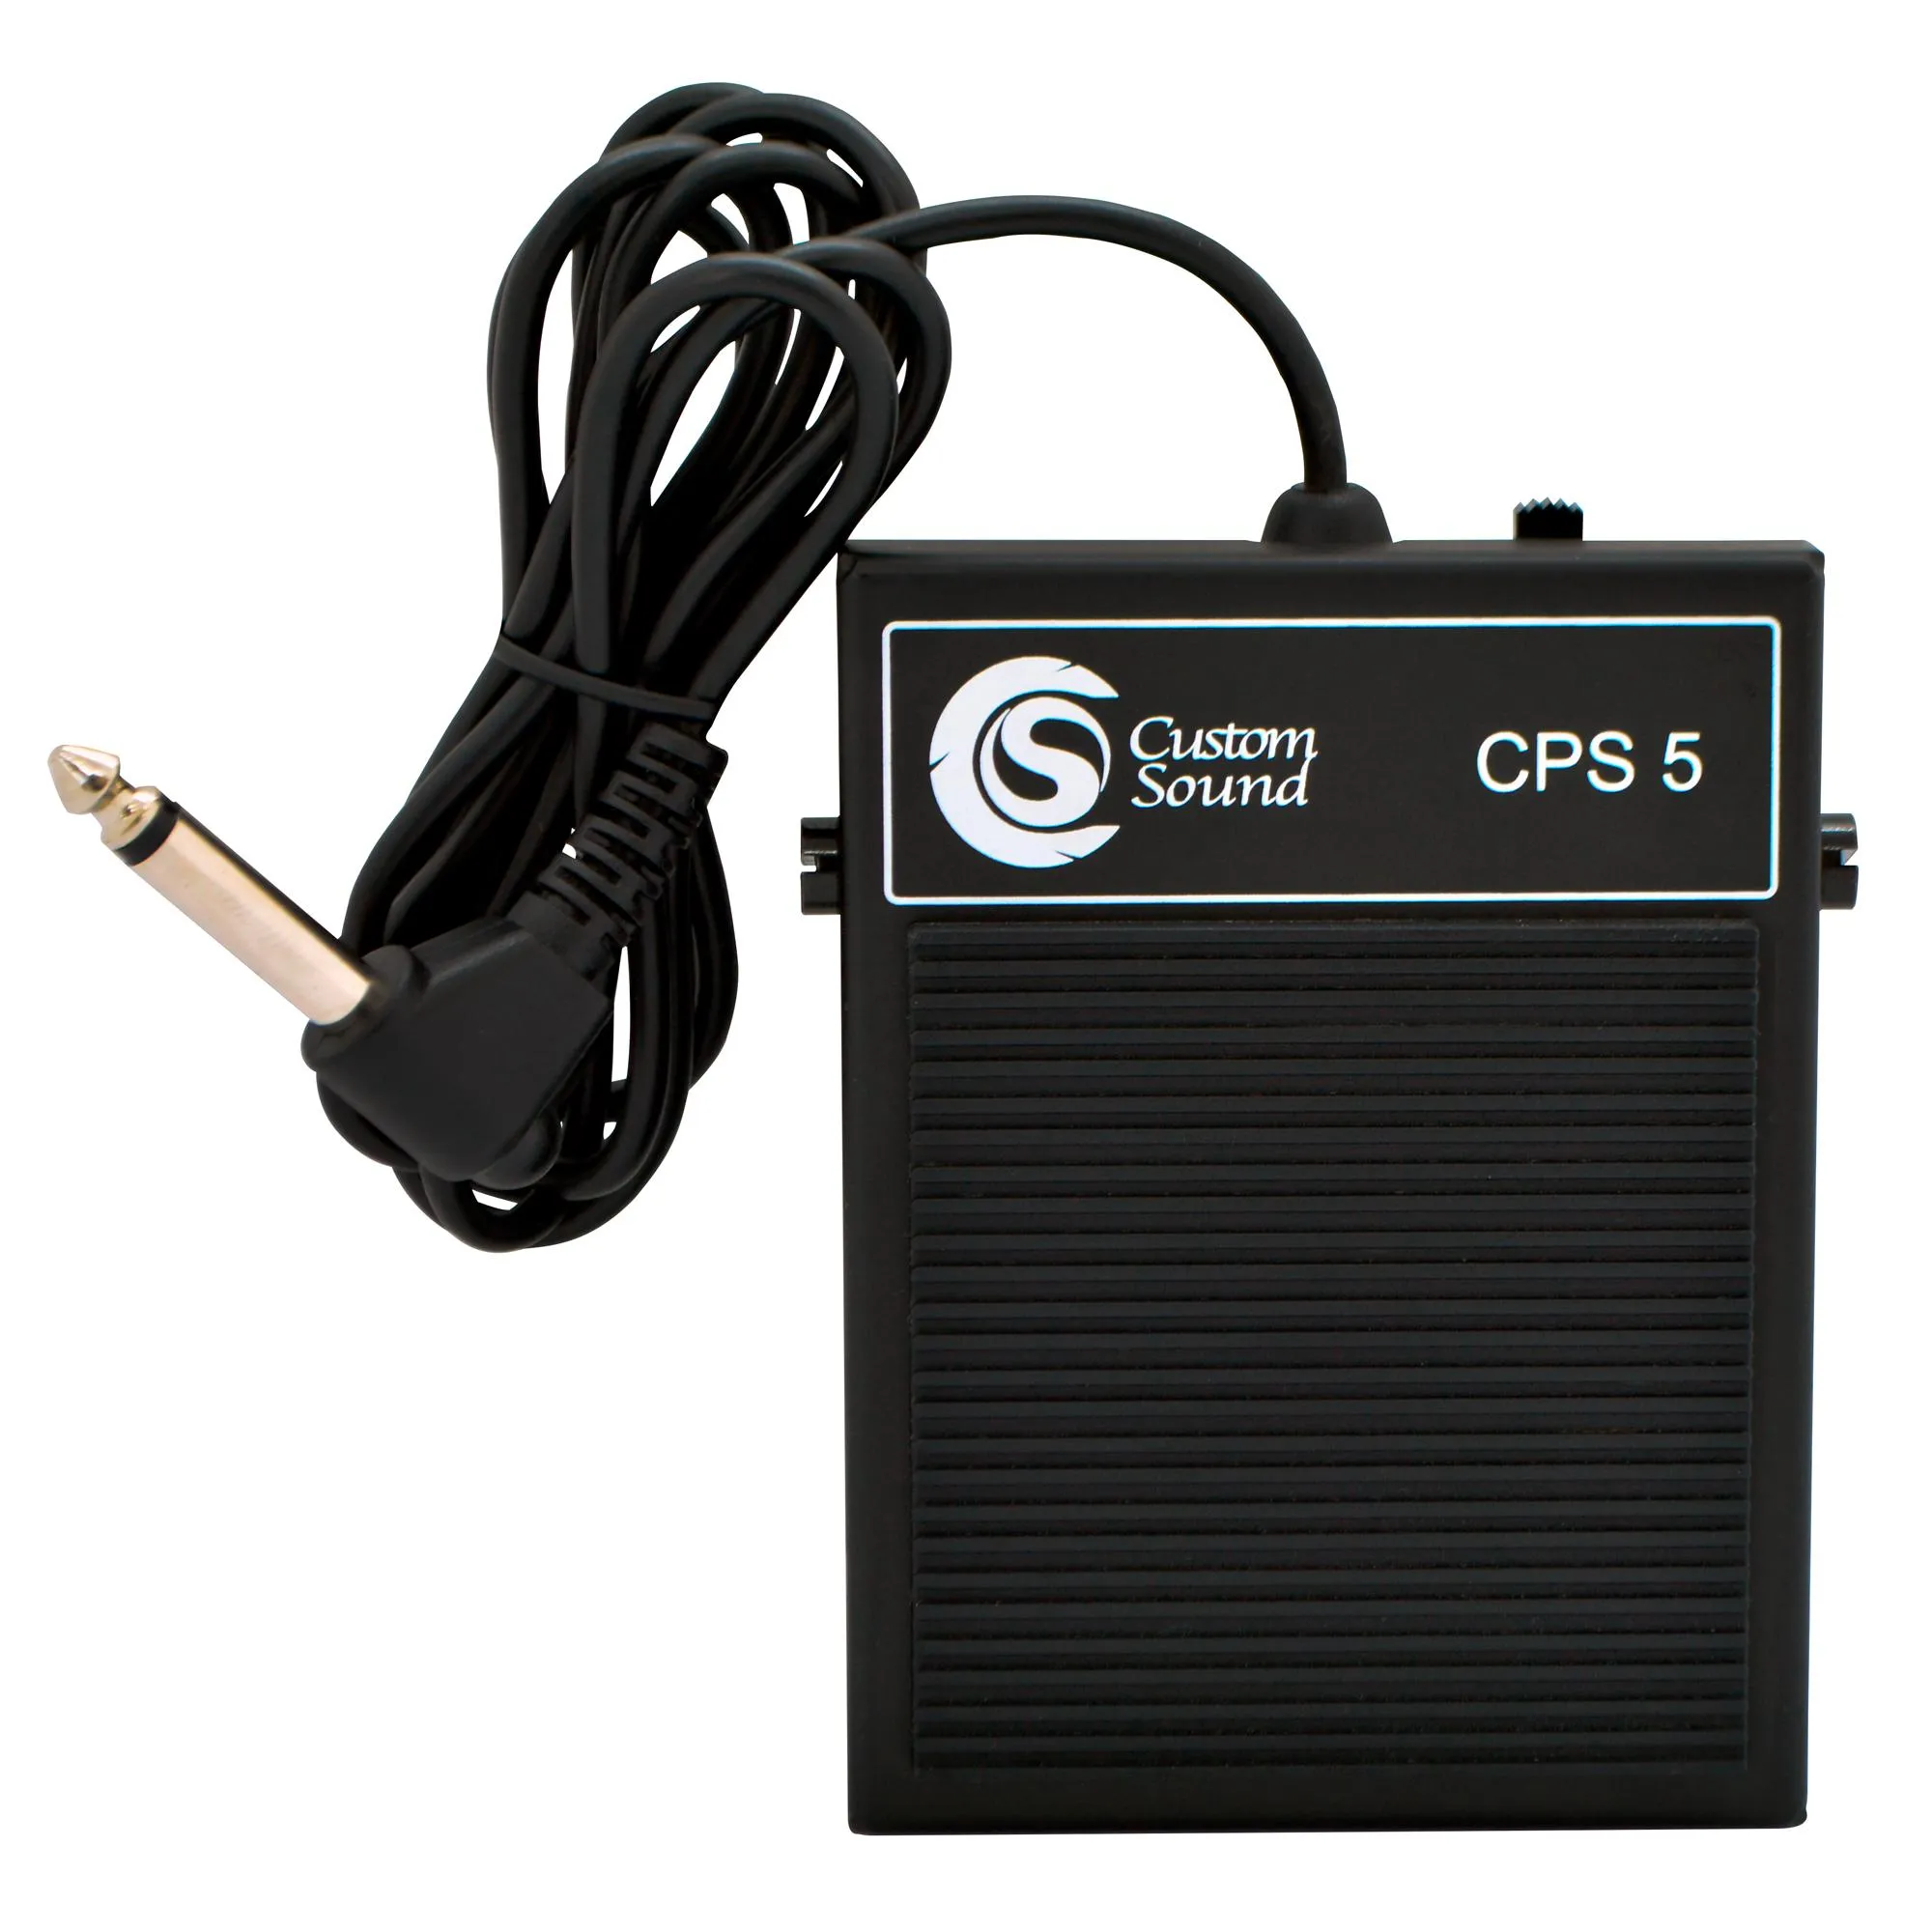 Pedal Sustain Para Teclado CPS-5 Custom Sound Preto por 106,99 à vista no boleto/pix ou parcele em até 4x sem juros. Compre na loja Mundomax!